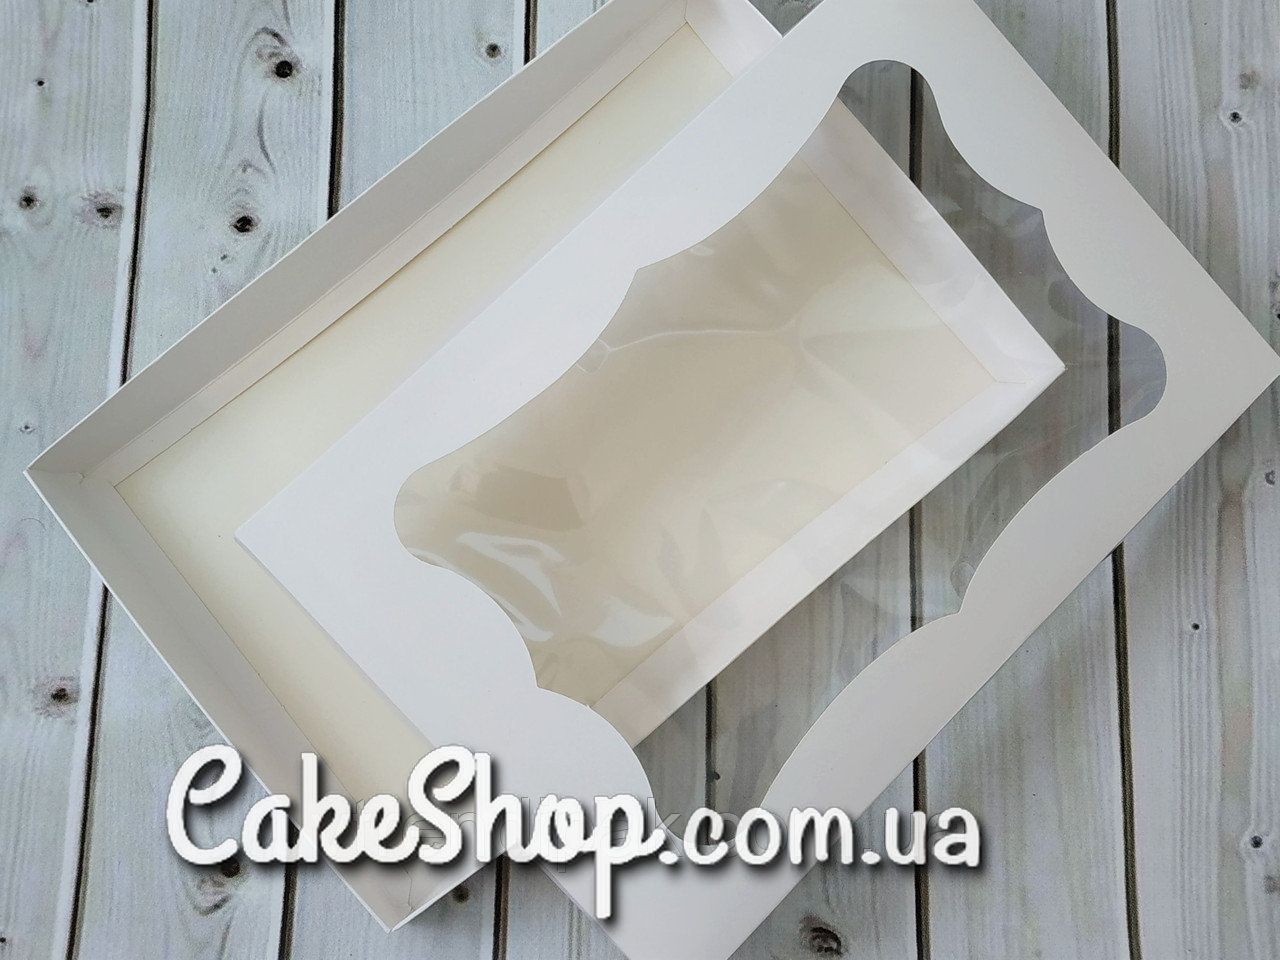 ⋗ Коробка для пряников с фигурным окном Белая, 20х15х3 см купить в Украине ➛ CakeShop.com.ua, фото